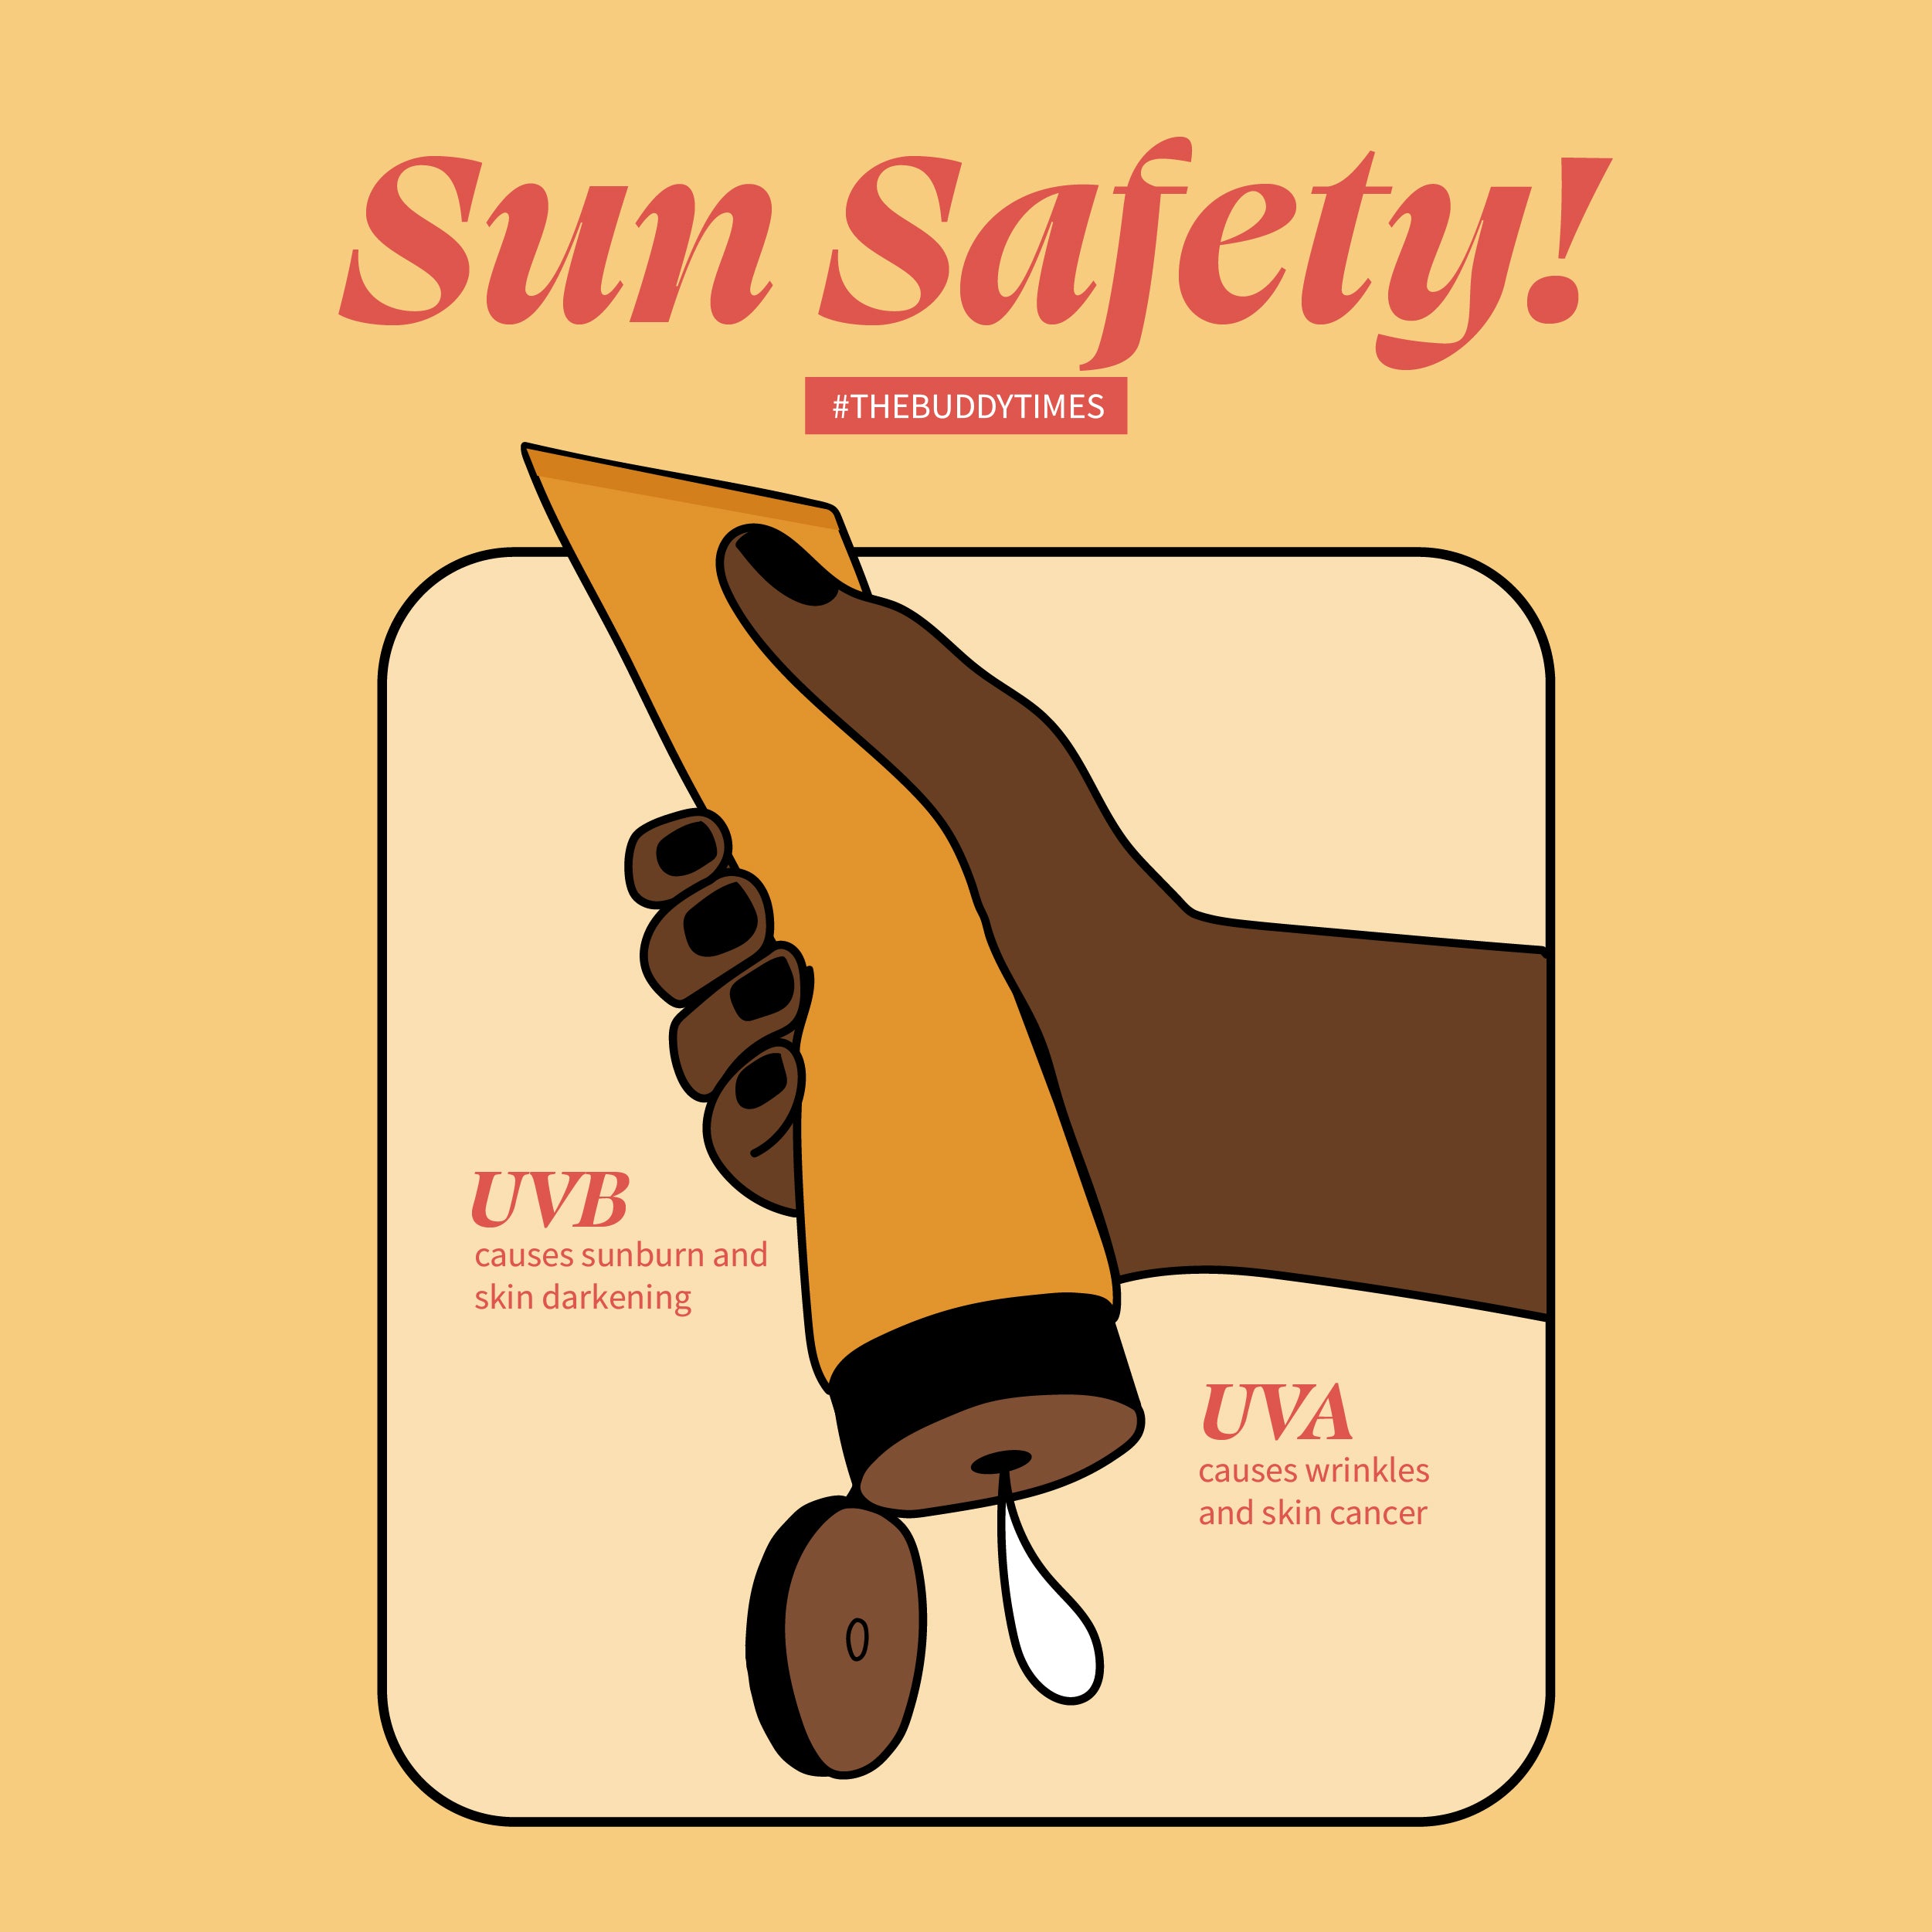 Sun Safety!